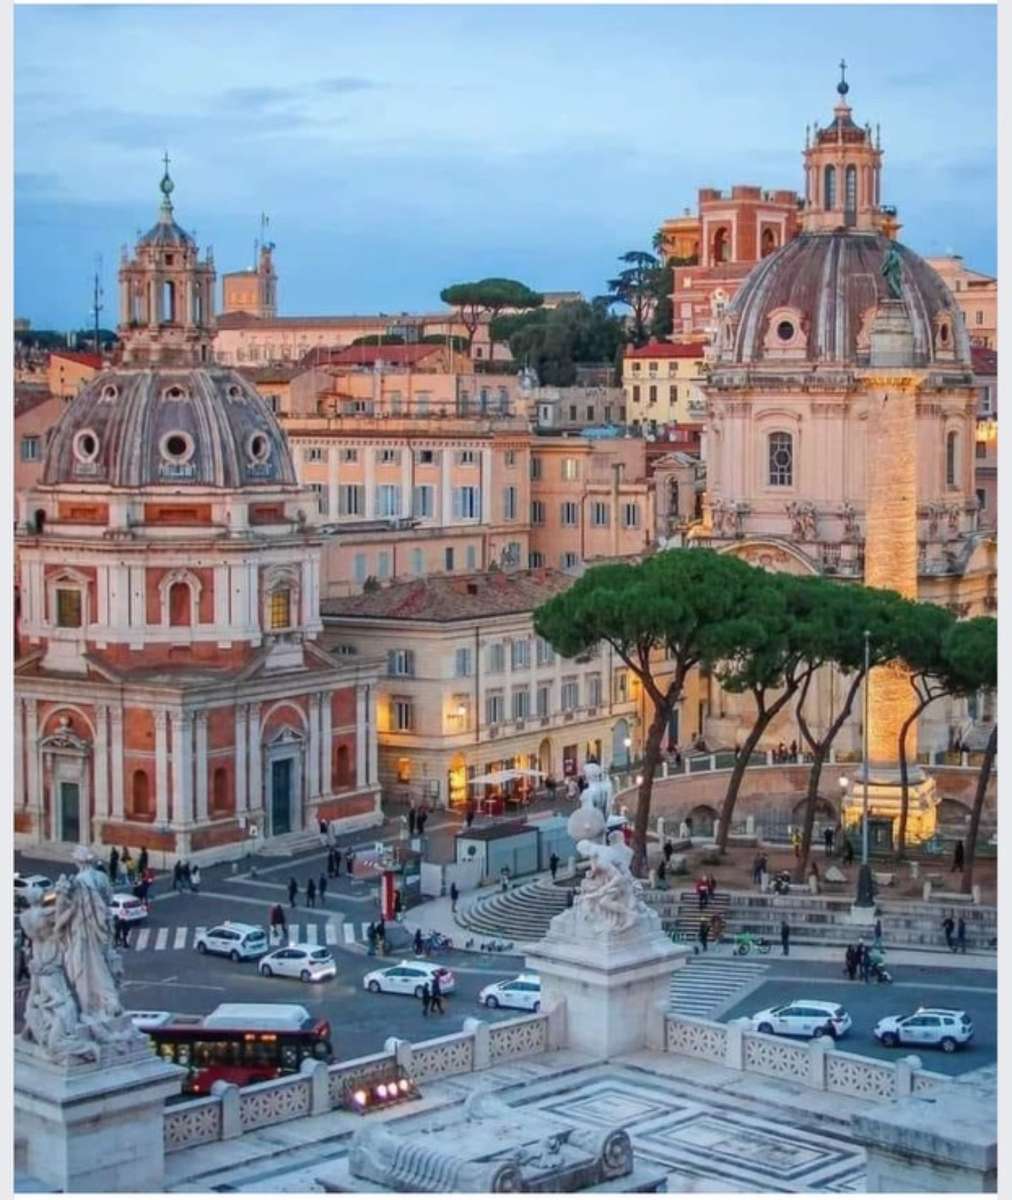 Roma, Italia De Nonna Gracie jigsaw puzzle online